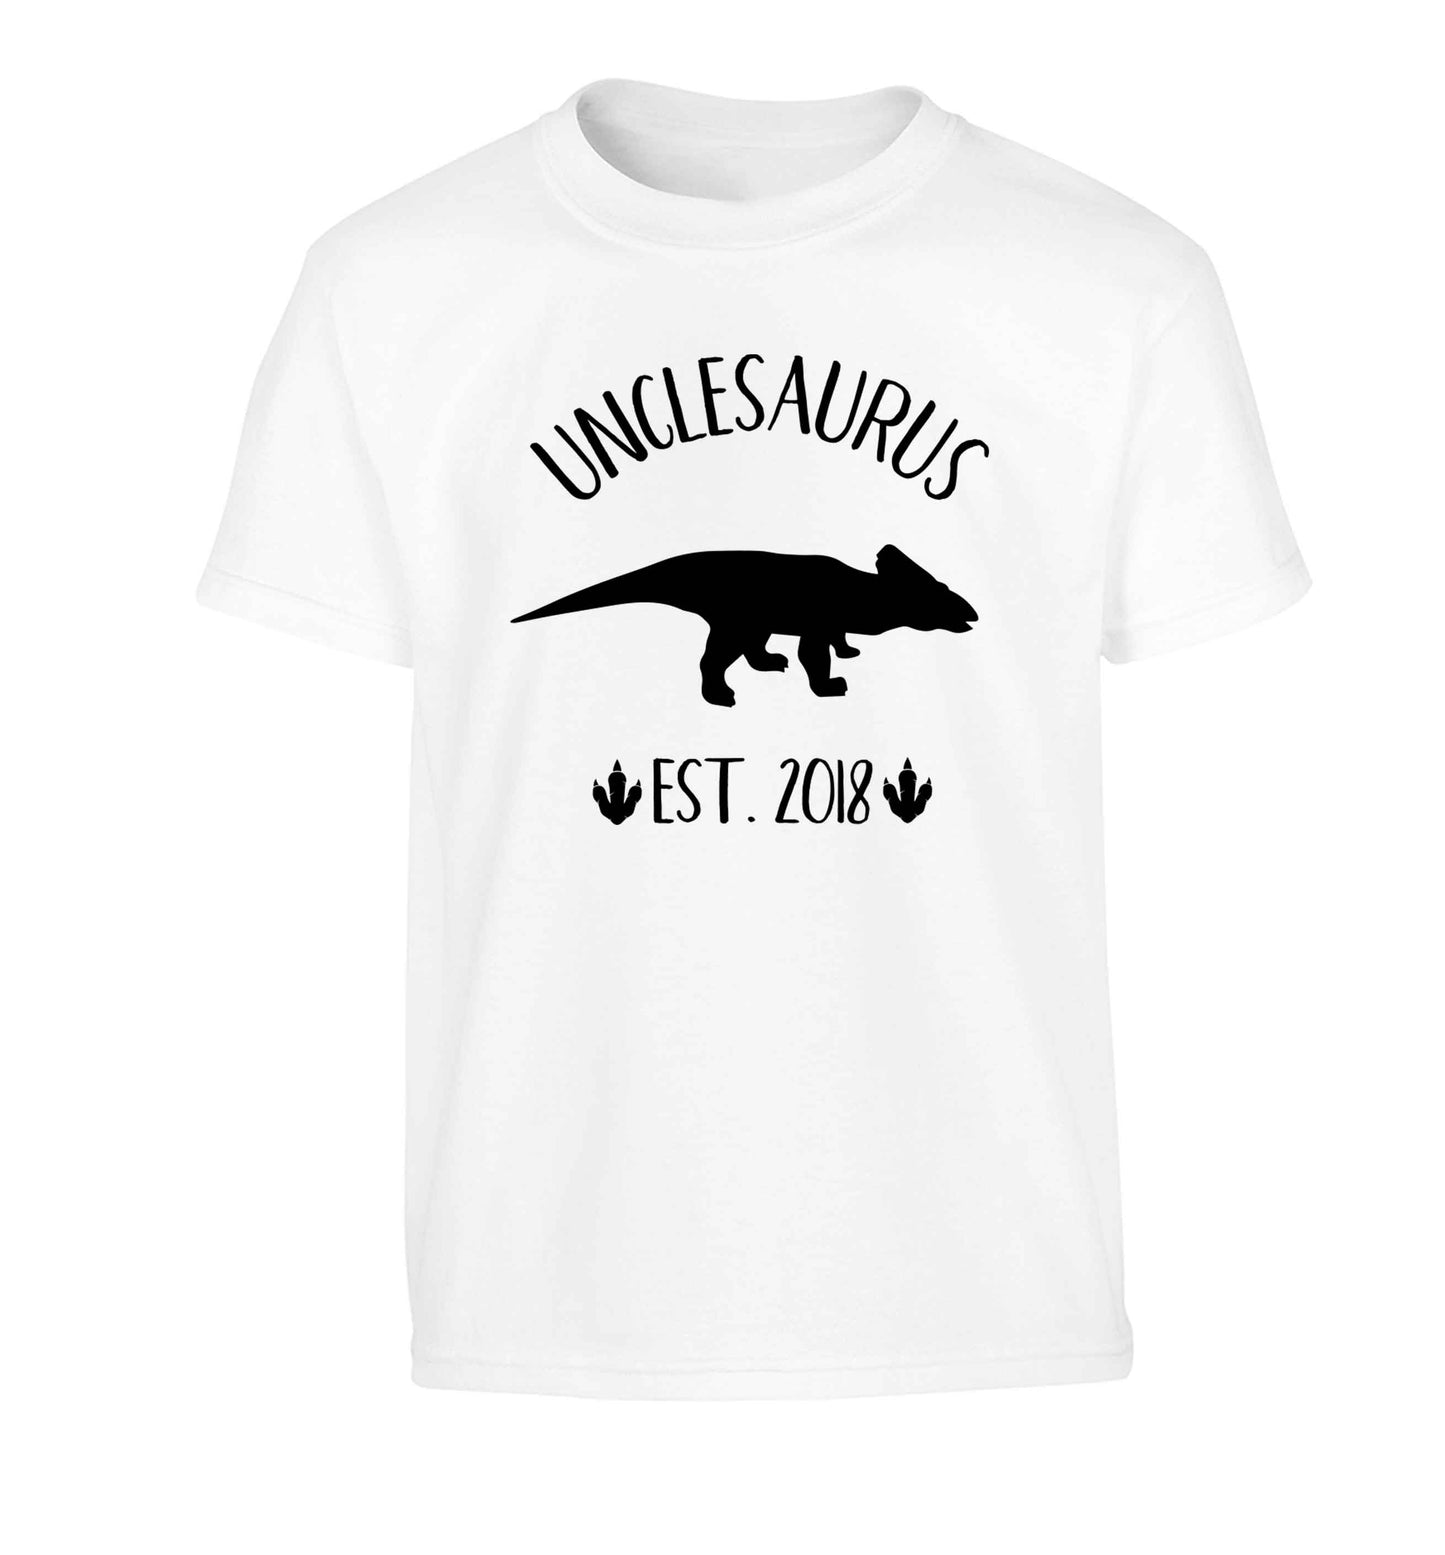 Personalised unclesaurus since (custom date) Children's white Tshirt 12-13 Years